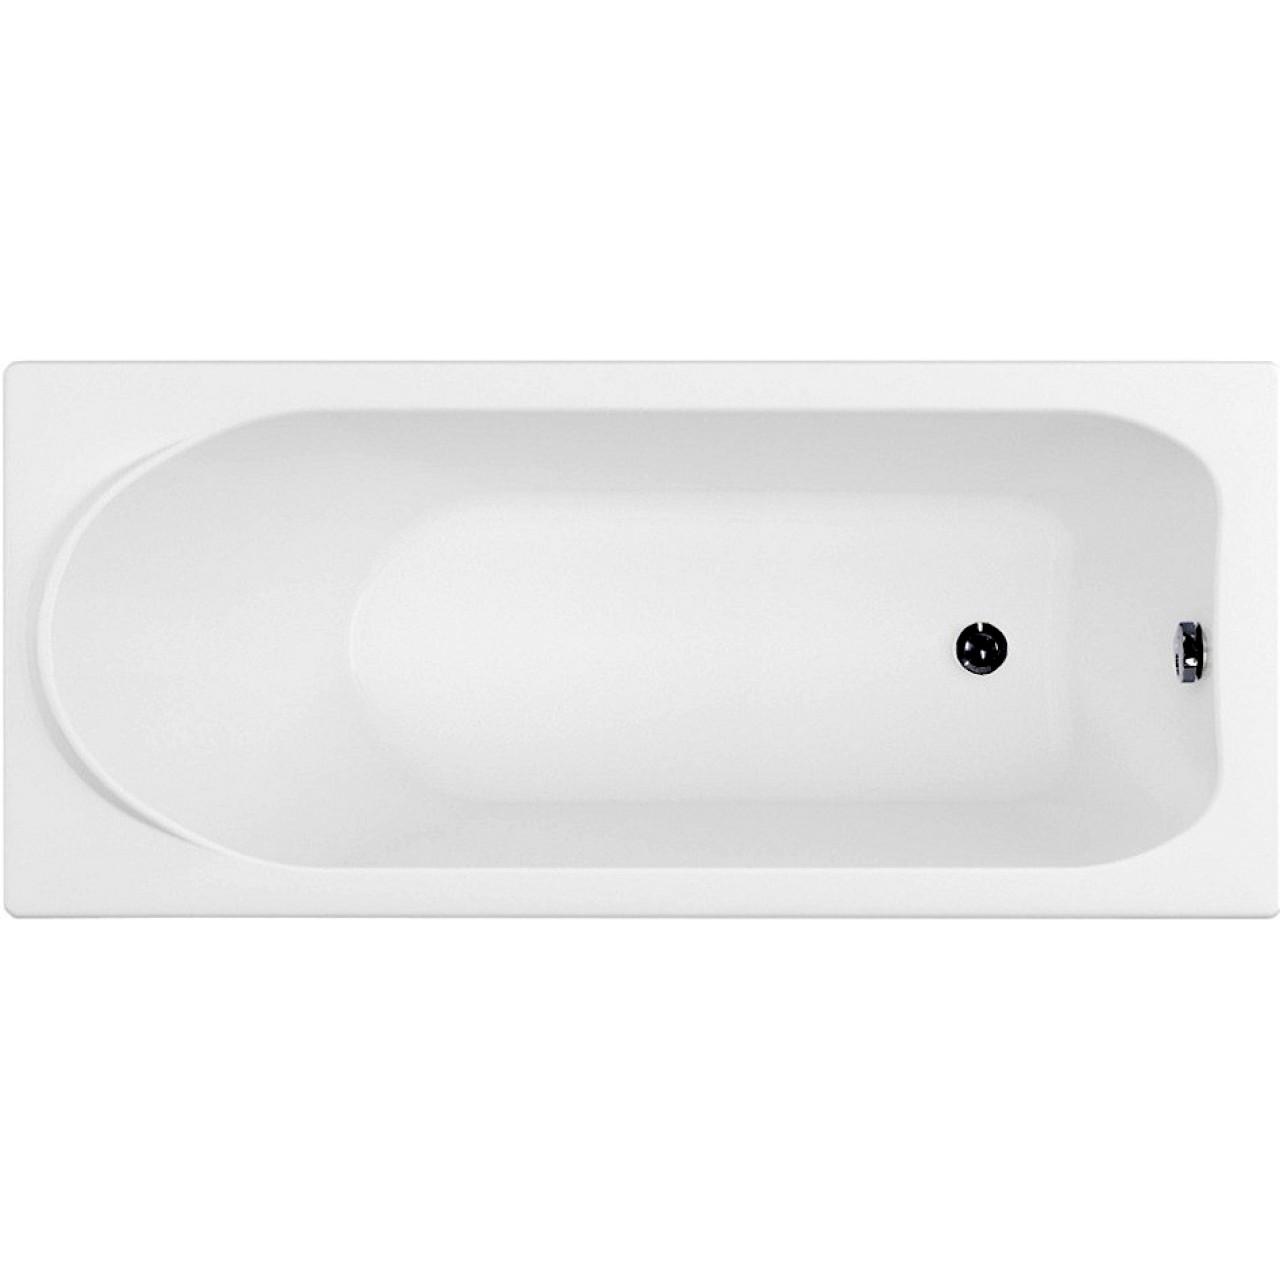 Акриловая ванна Francesca Avanti SOLO 160x70 с экранами и каркасом купить в Москве по цене от 32330р. в интернет-магазине mebel-v-vannu.ru